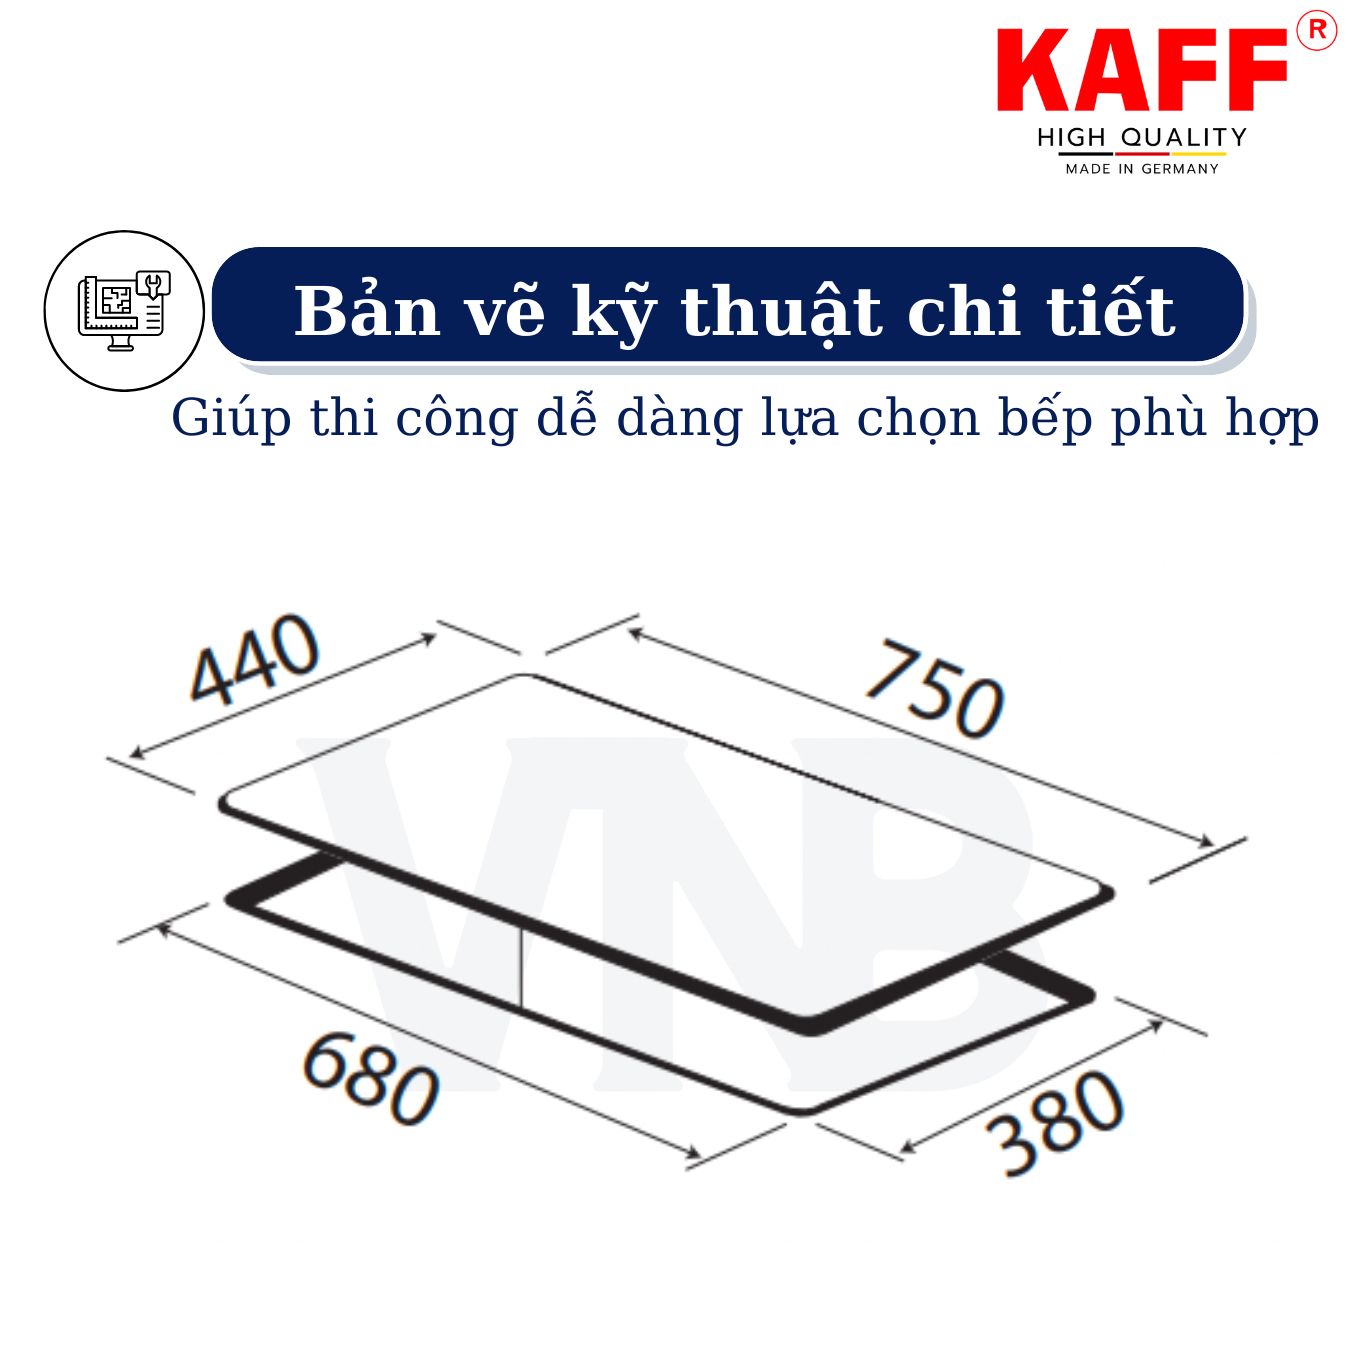 Bộ Bếp ga âm KAFF KF- 218 bao gồm: Bếp ga + chảo chống dính cao cấp + bộ van ga - Hàng chính hãng